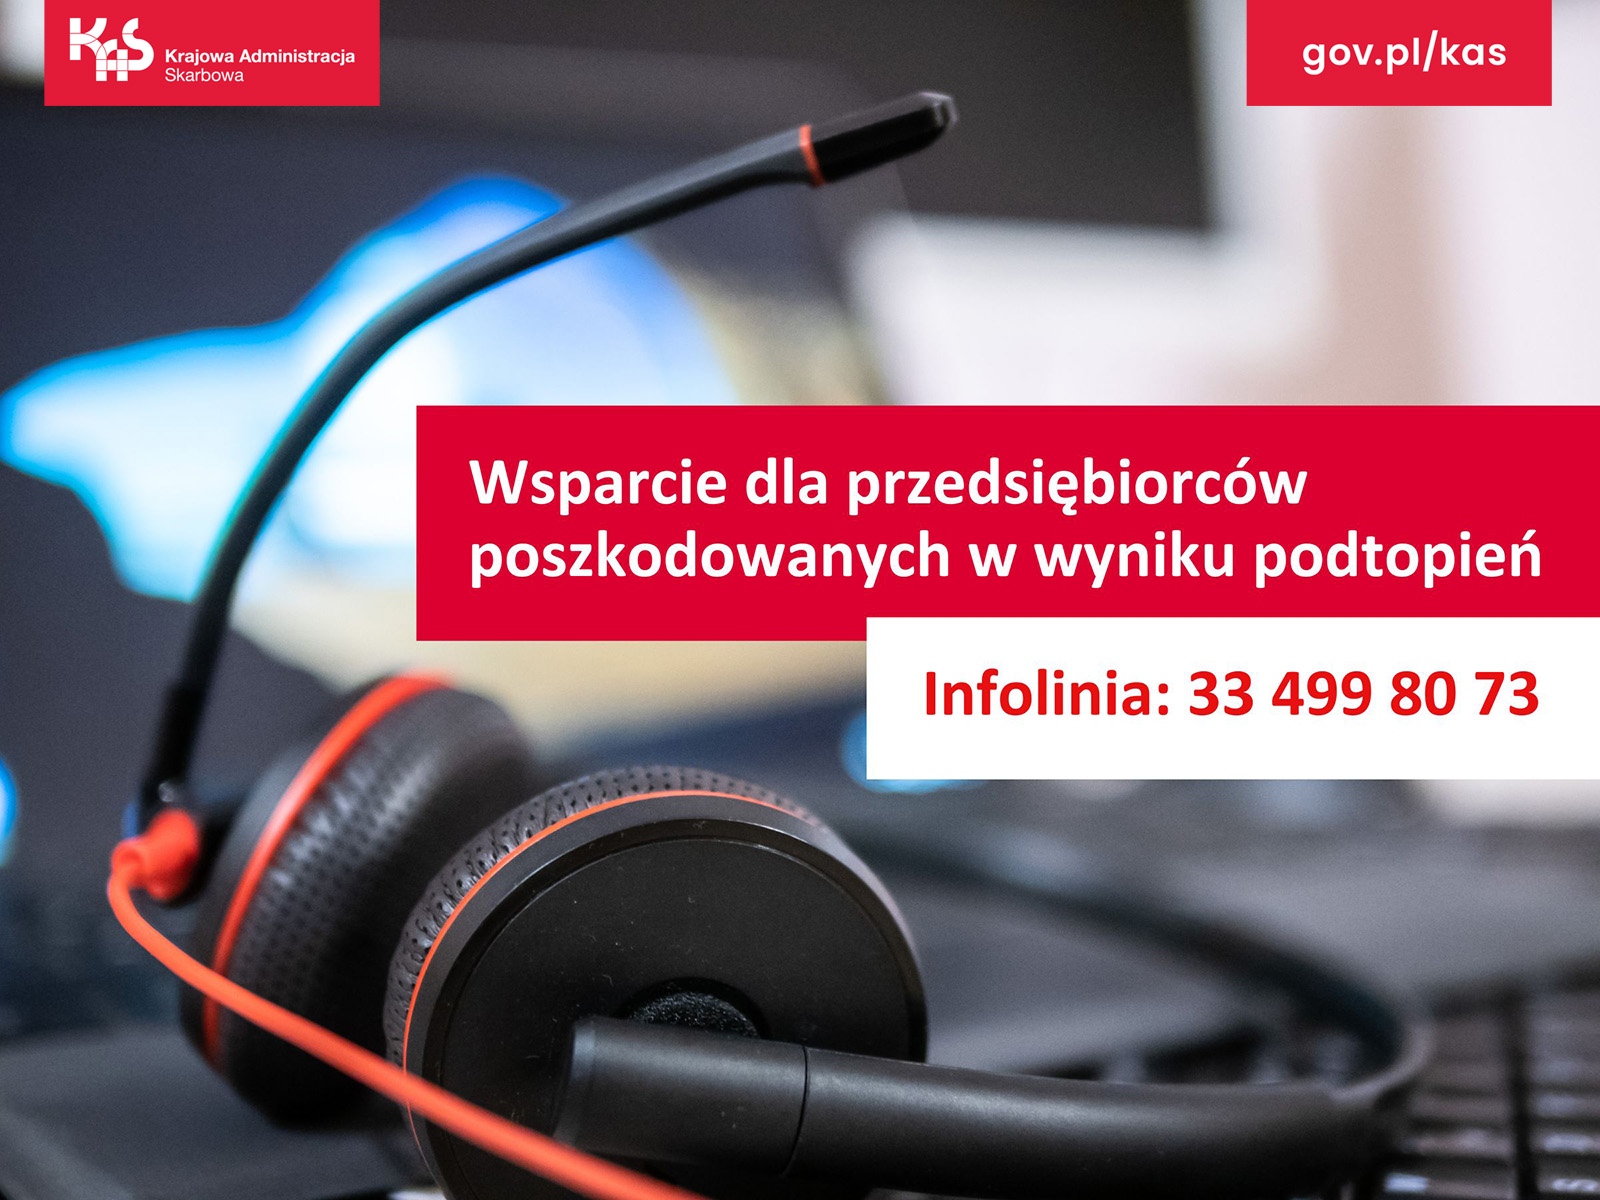 Krajowa Administracja Skarbowa gov.pl/kas Wsparcie dla przedsiębiorców poszkodowanych w wyniku podtopień Infolinia: 33 499 80 73